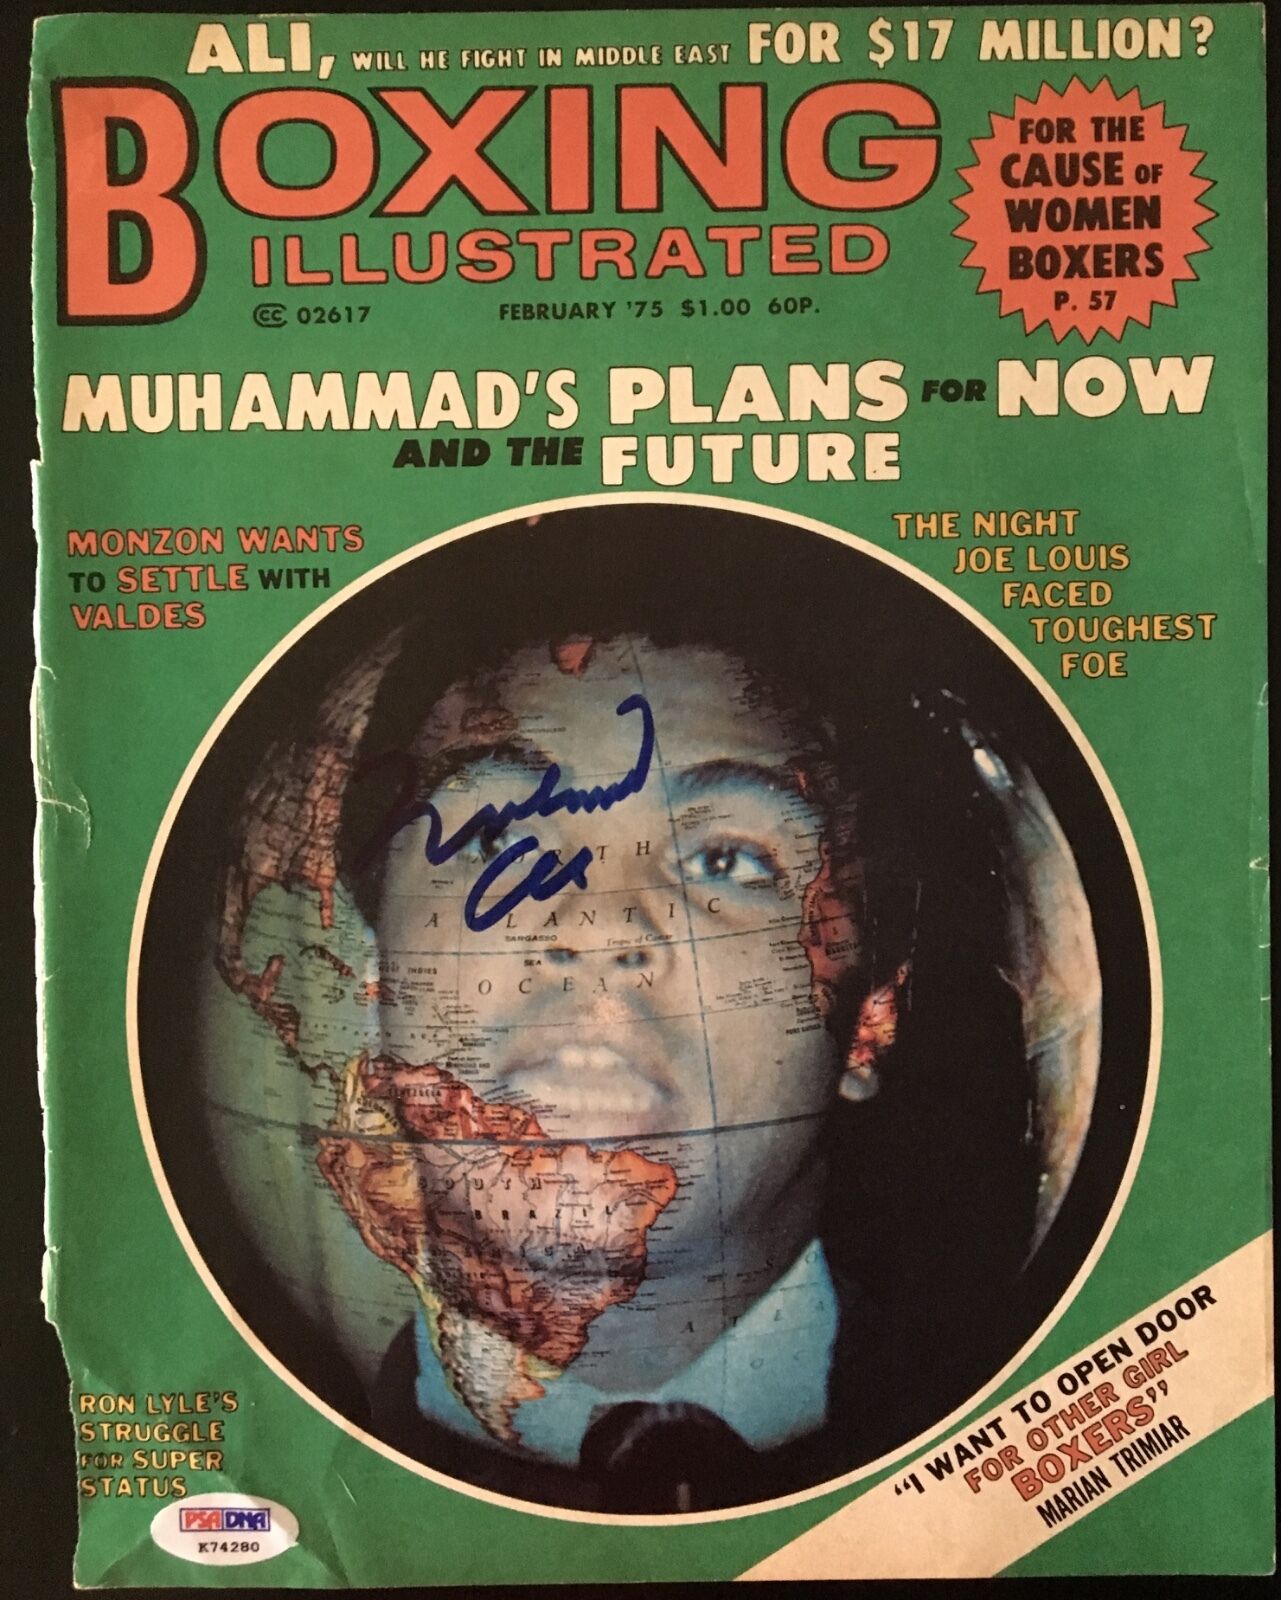 Muhammad Ali Signed Boxing Illustrated Magazine Cover w/PSA DNA LOA K74280  Collectible Memorabilia